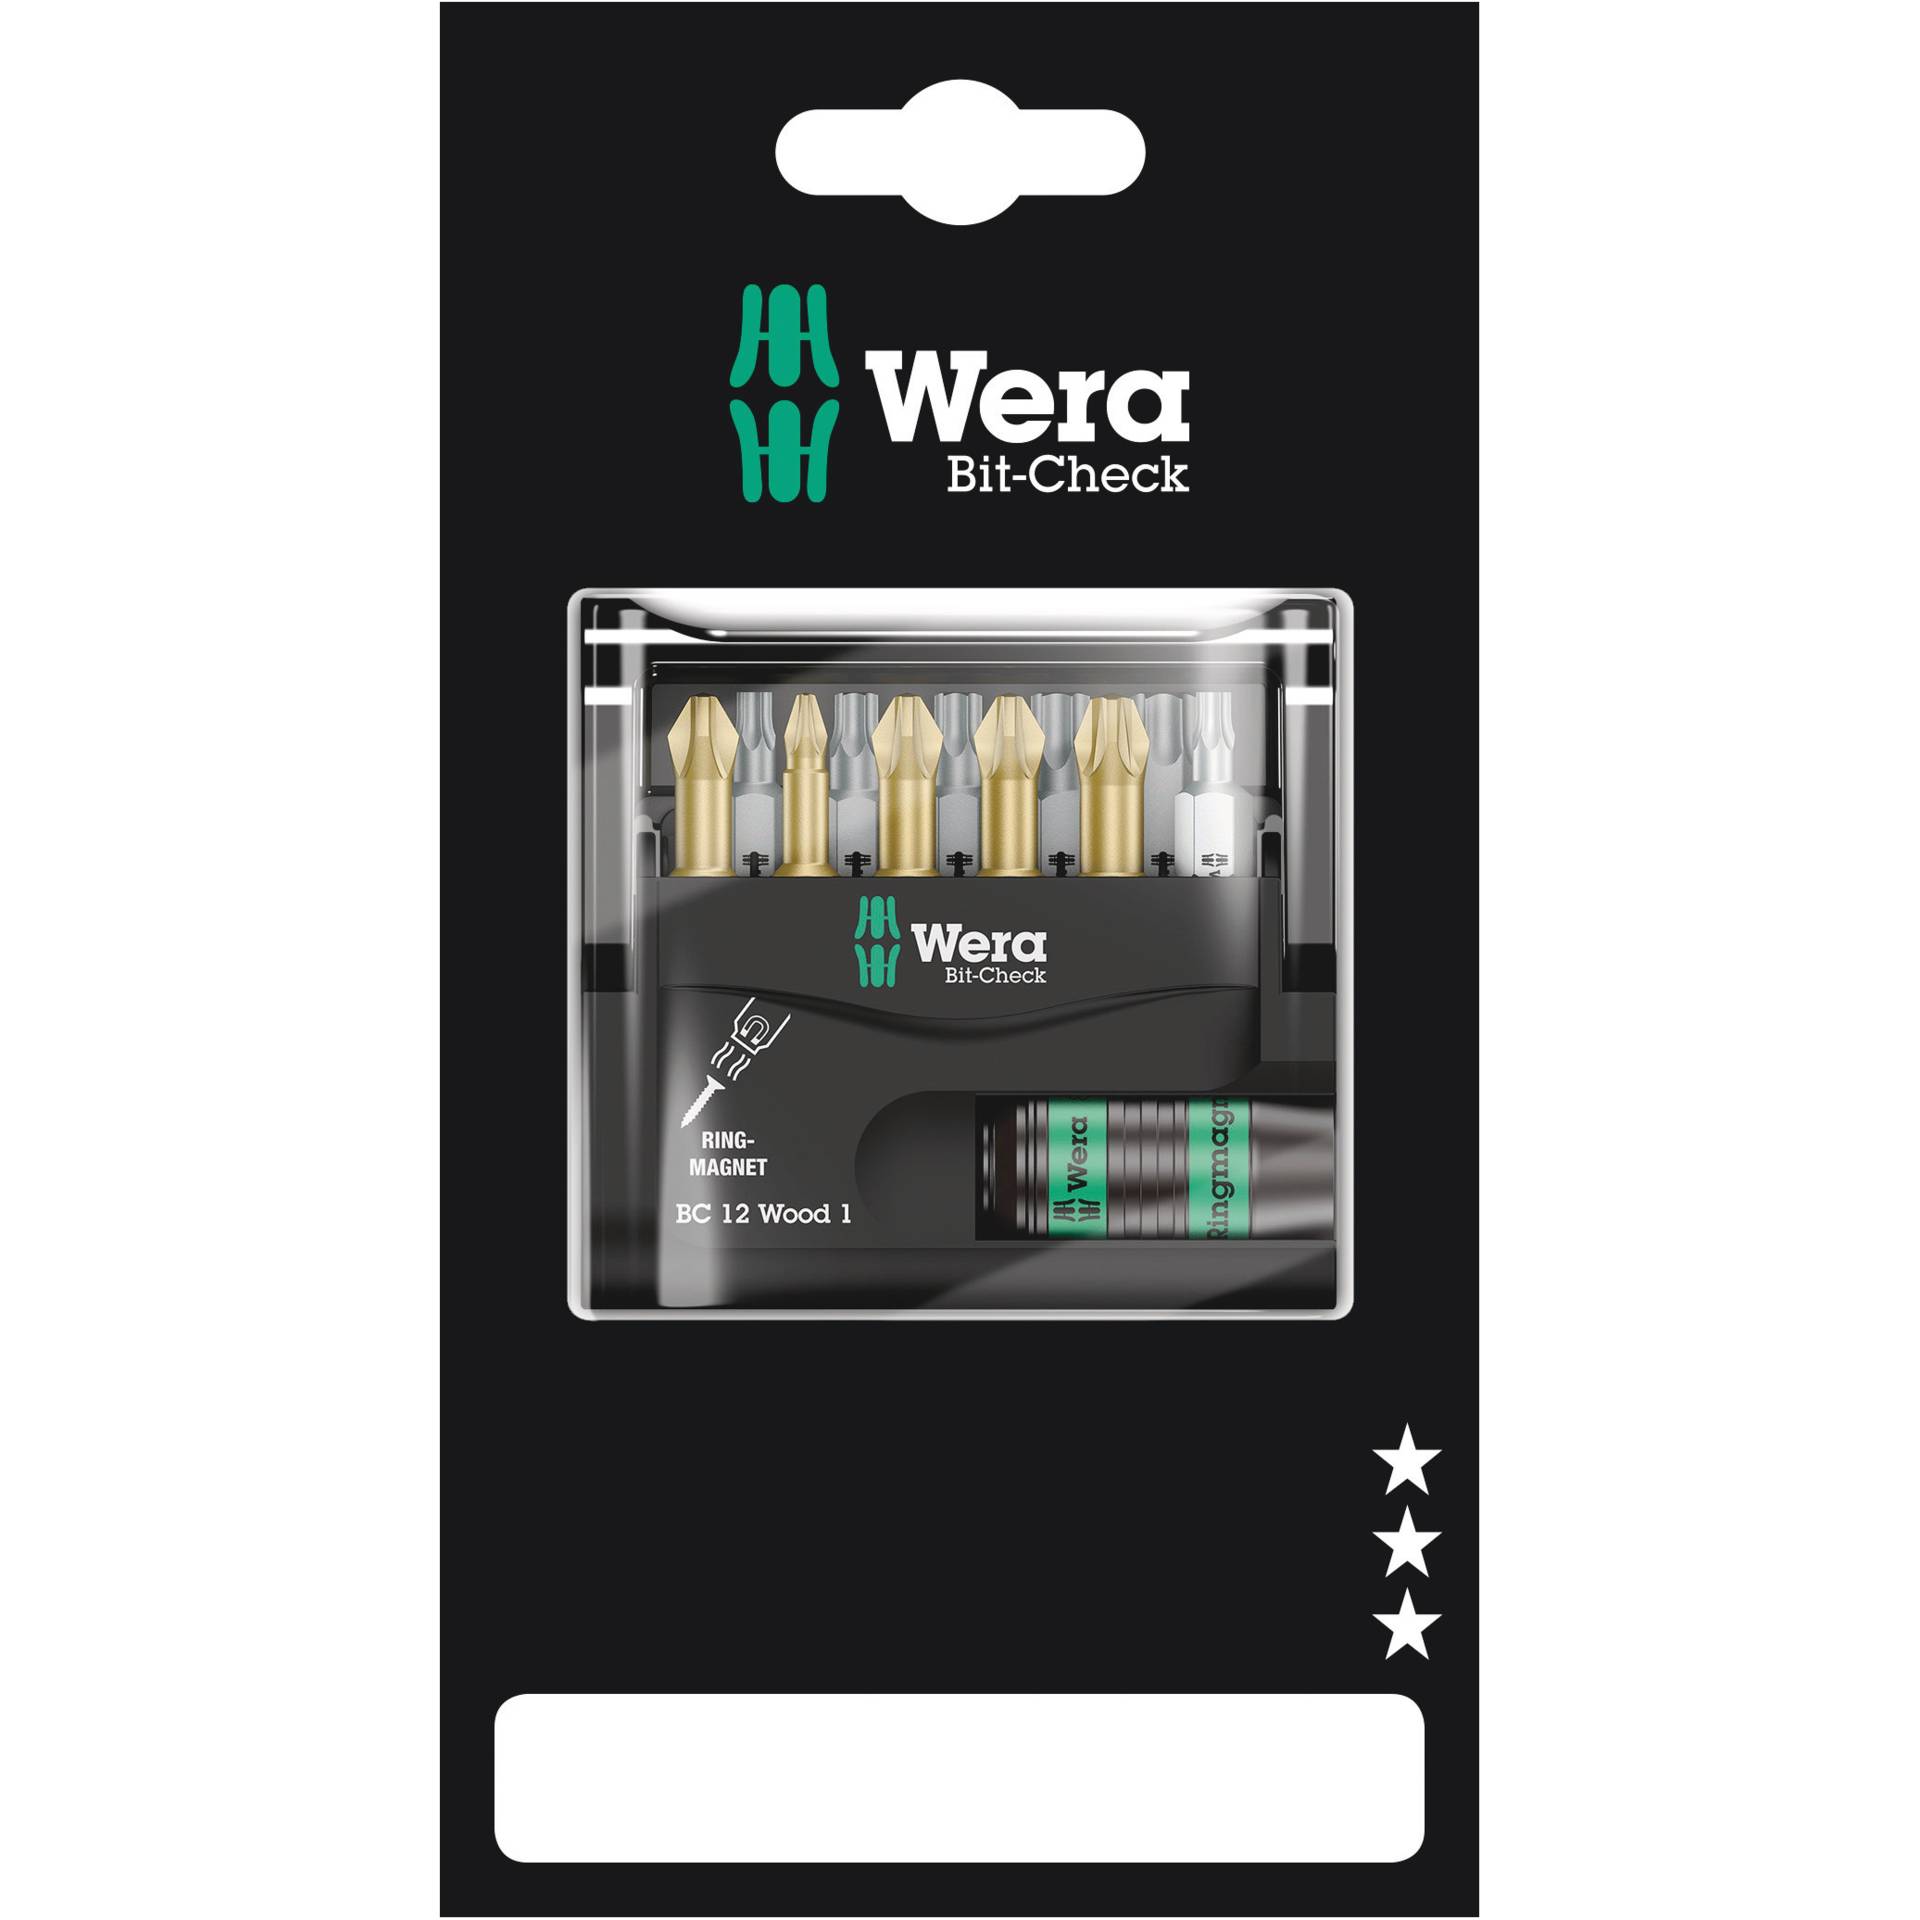 Wera Bit-Check 12 Wood 1 SB Schraubenziehereinsatz 11 Stück(e)